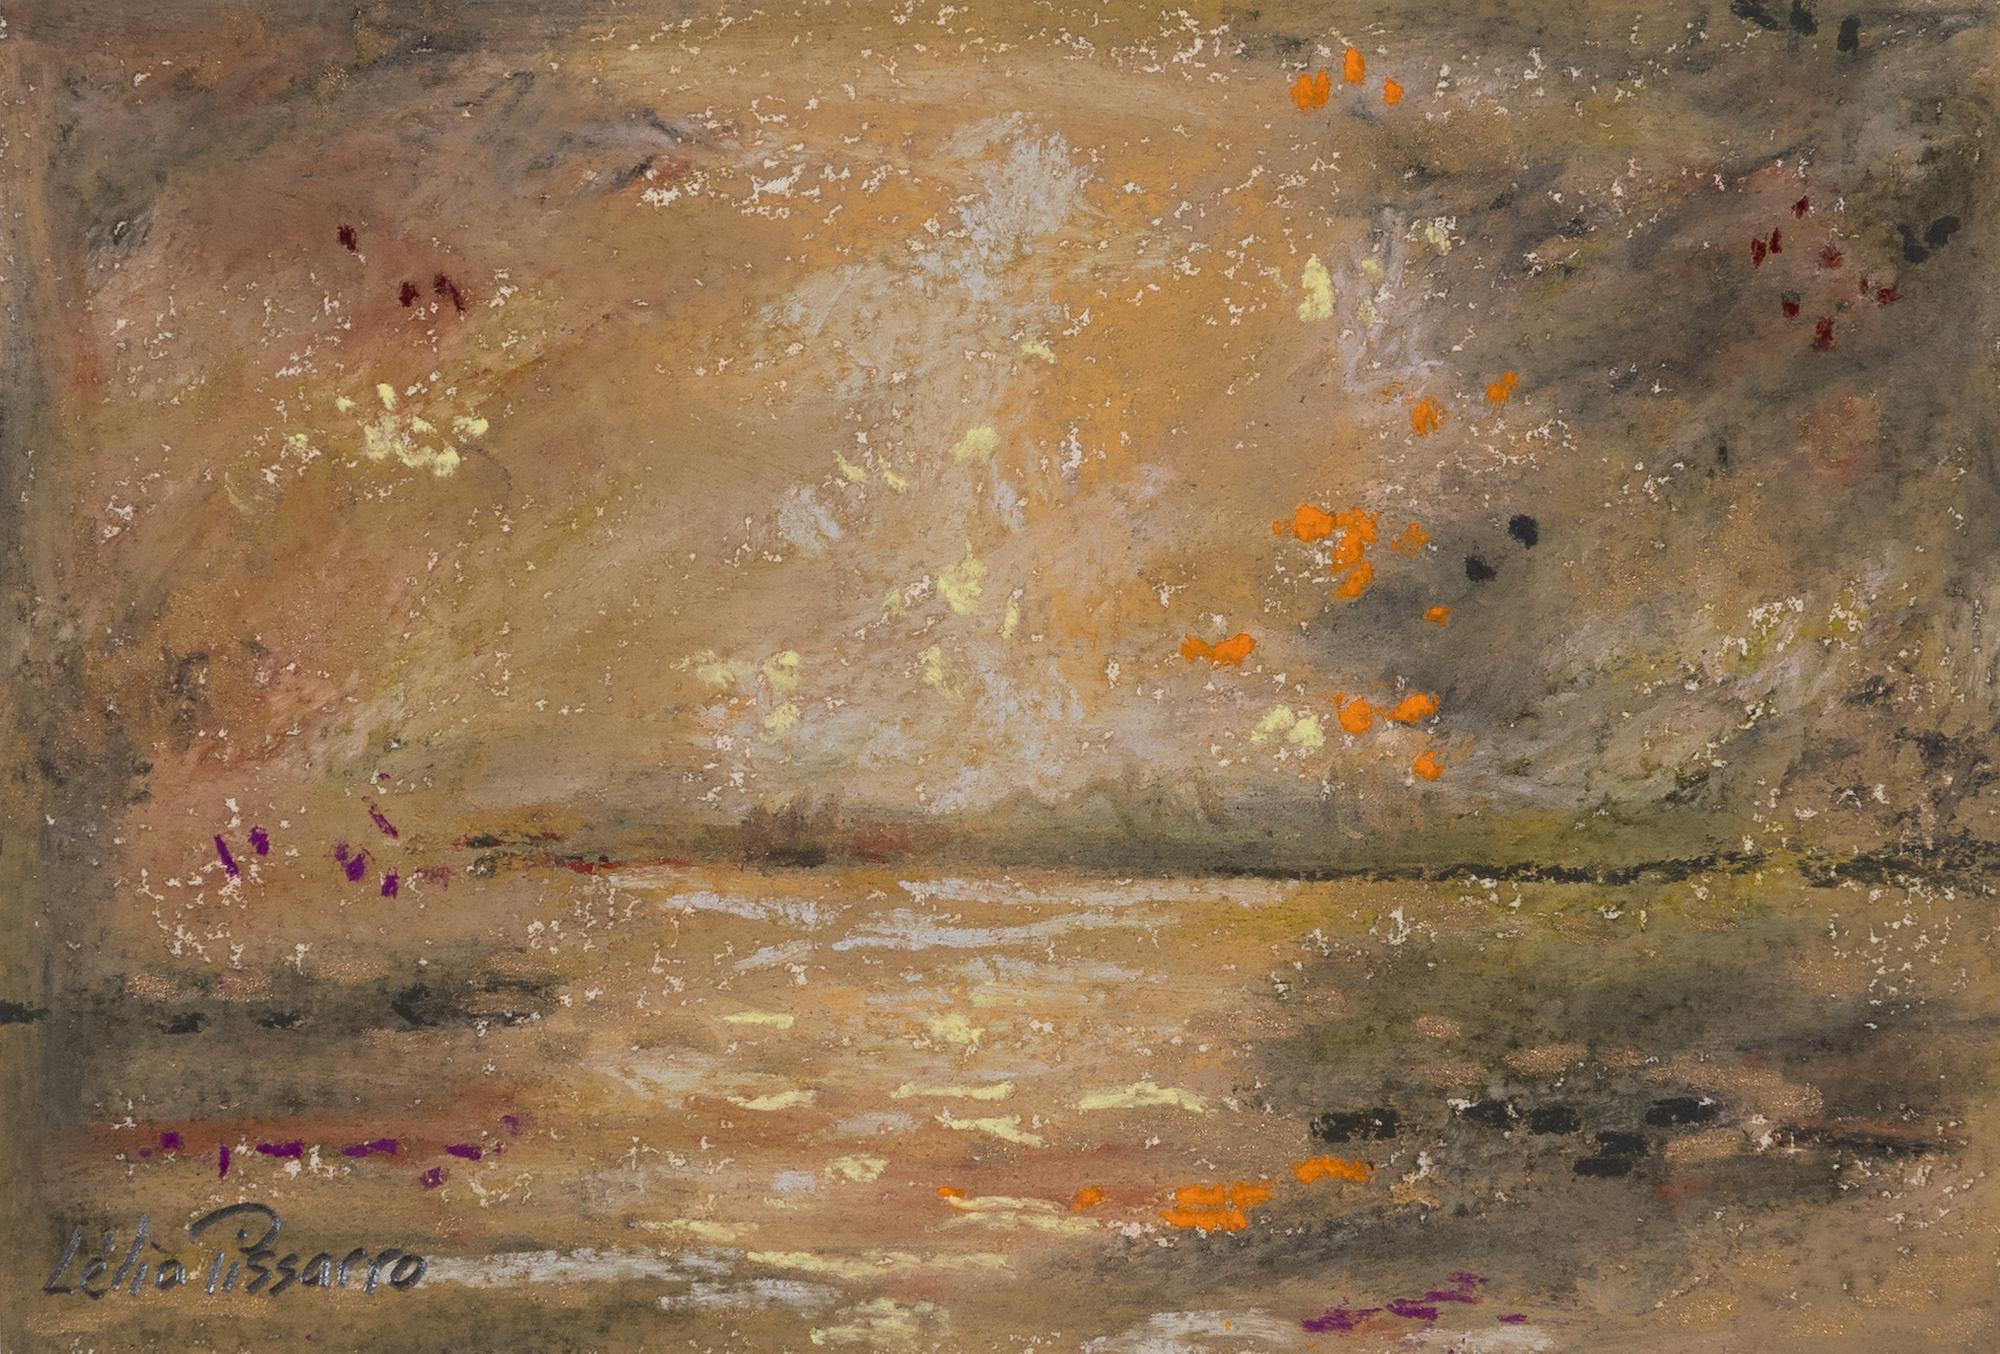 La Rivière de Lyora by Lélia Pissarro - Pastel on paper, Landscape